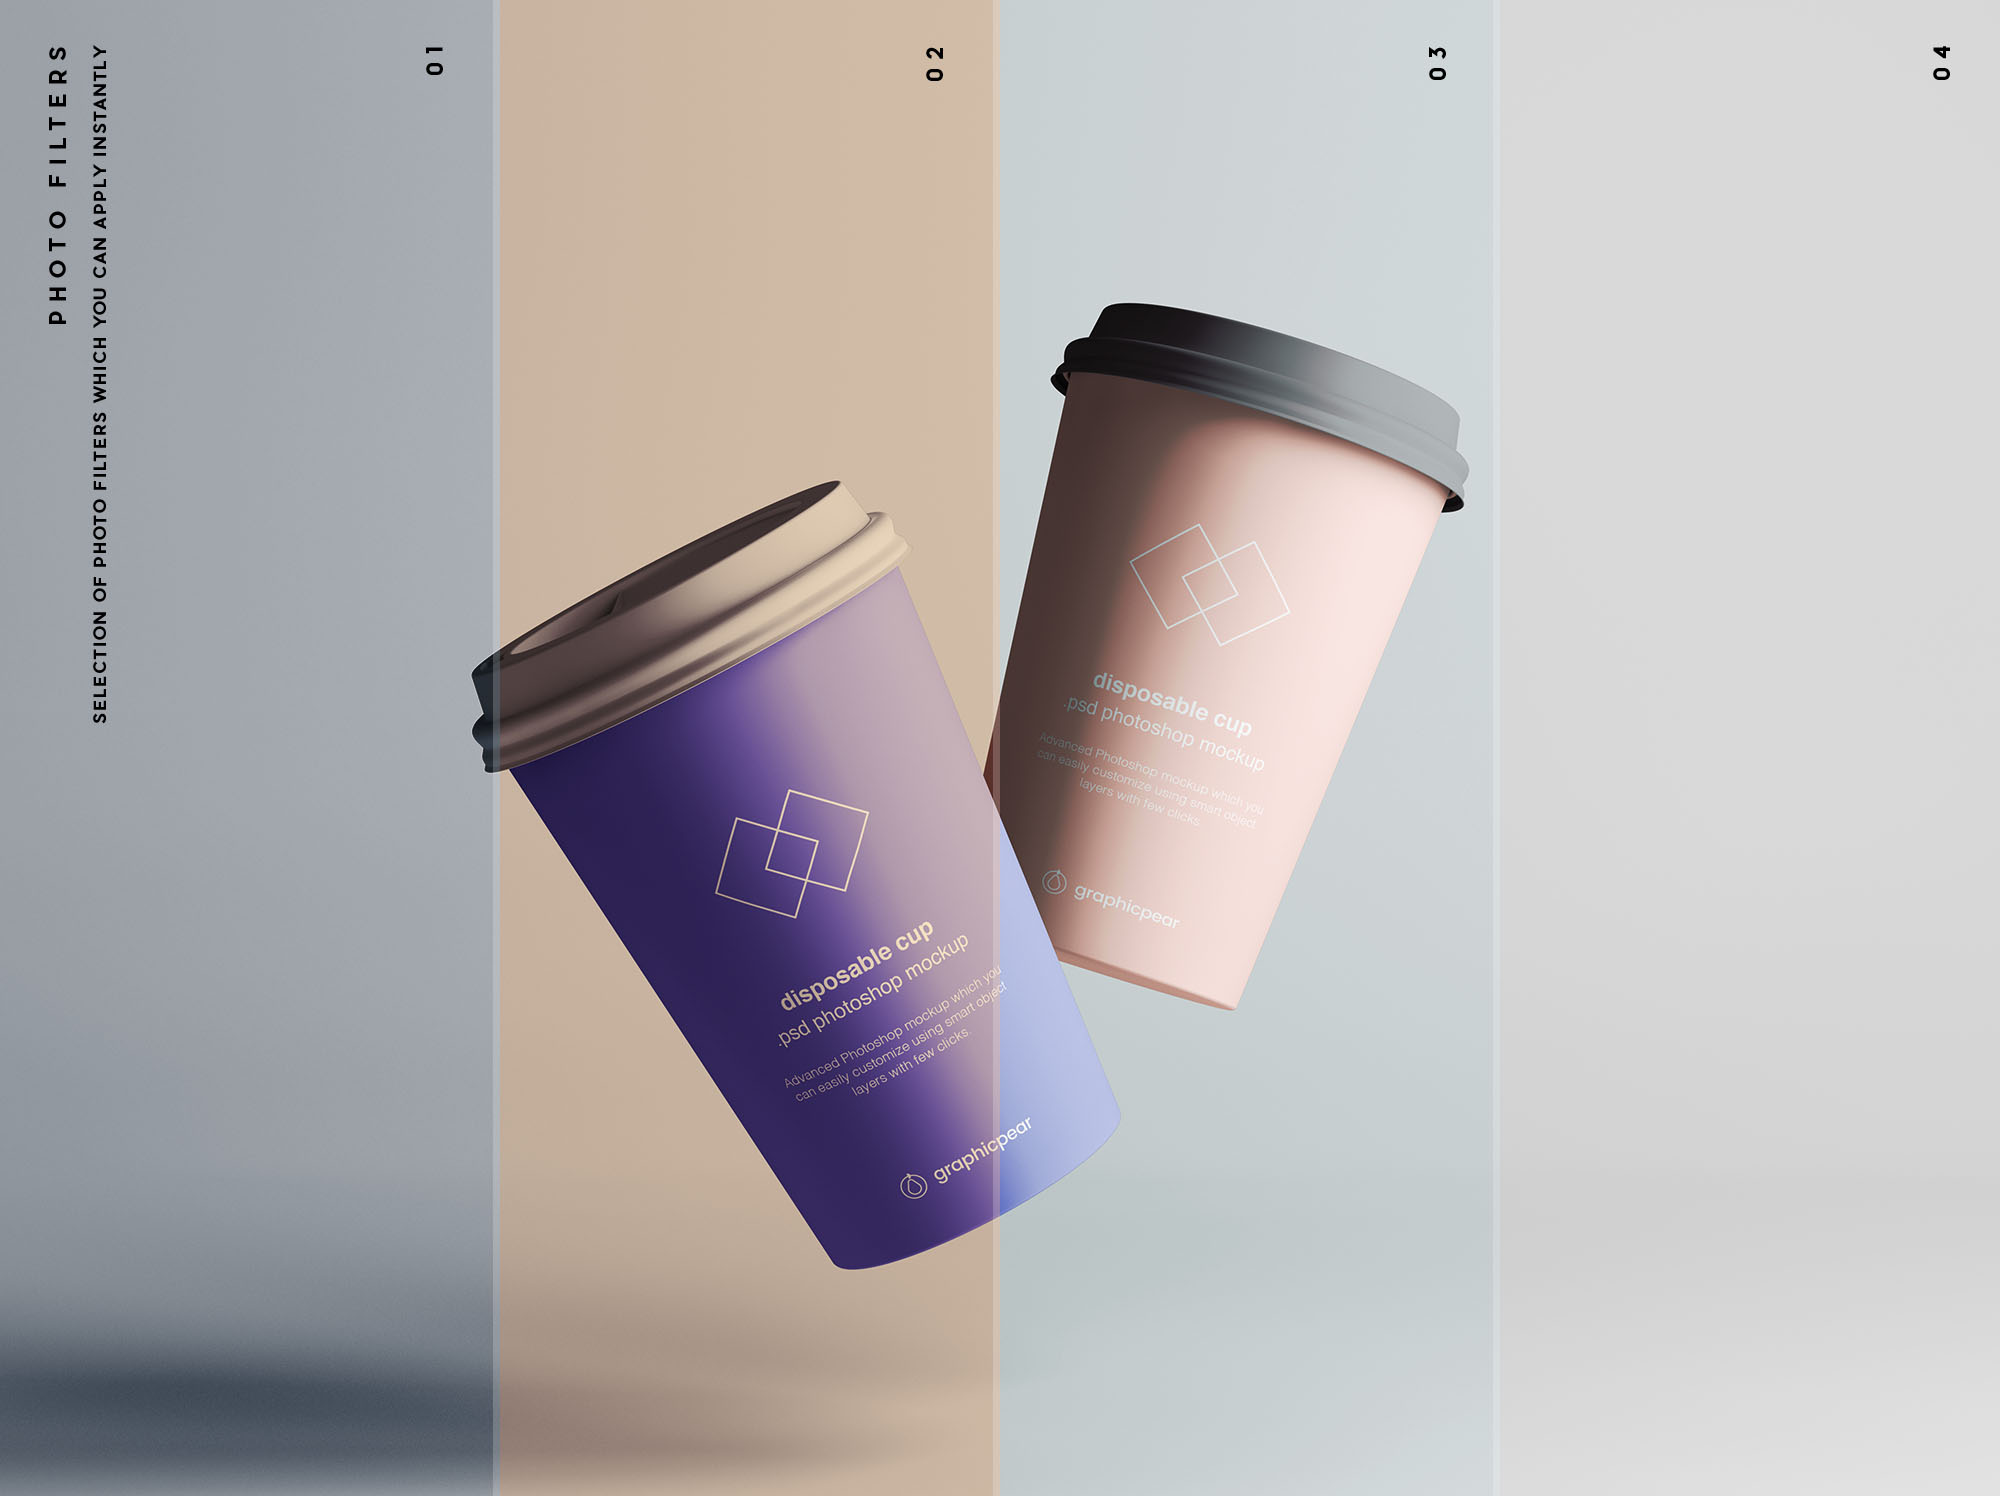 7个咖啡纸杯定制外观设计效果图样机模板 7 Coffee Cup Mockups插图(8)